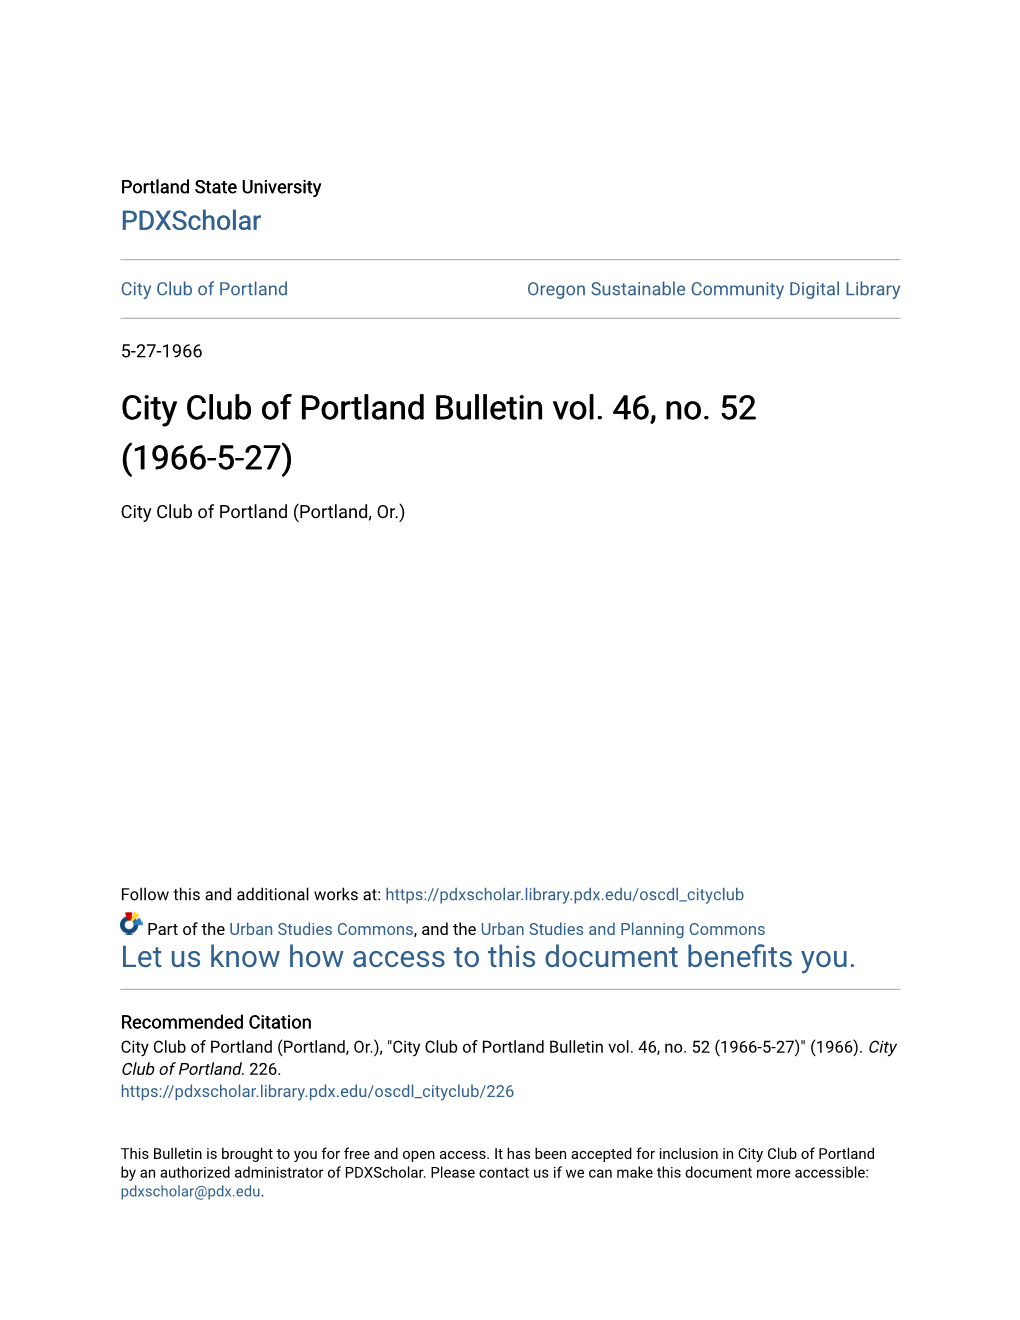 City Club of Portland Bulletin Vol. 46, No. 52 (1966-5-27)